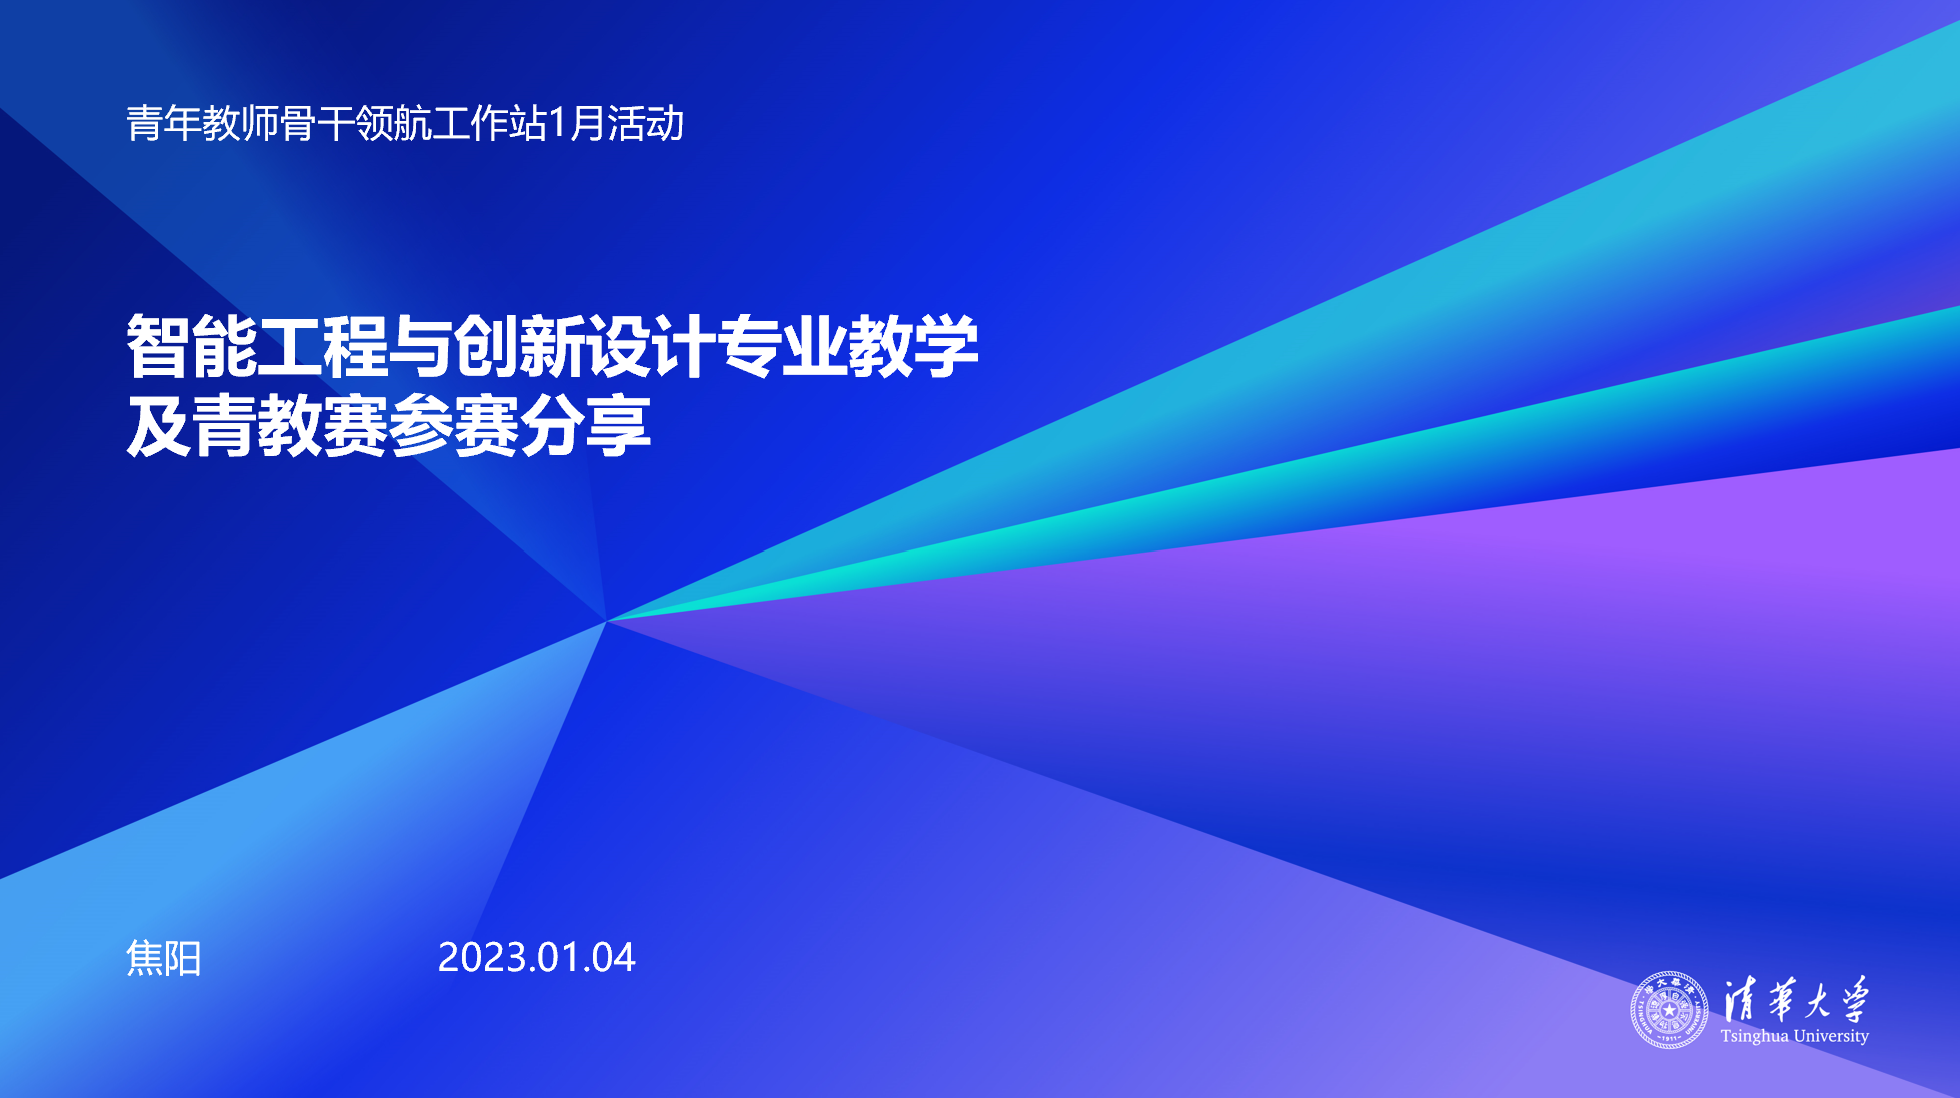 20220104-领航工作站活动-组织部-王江典、焦阳青教赛参赛分享2.png